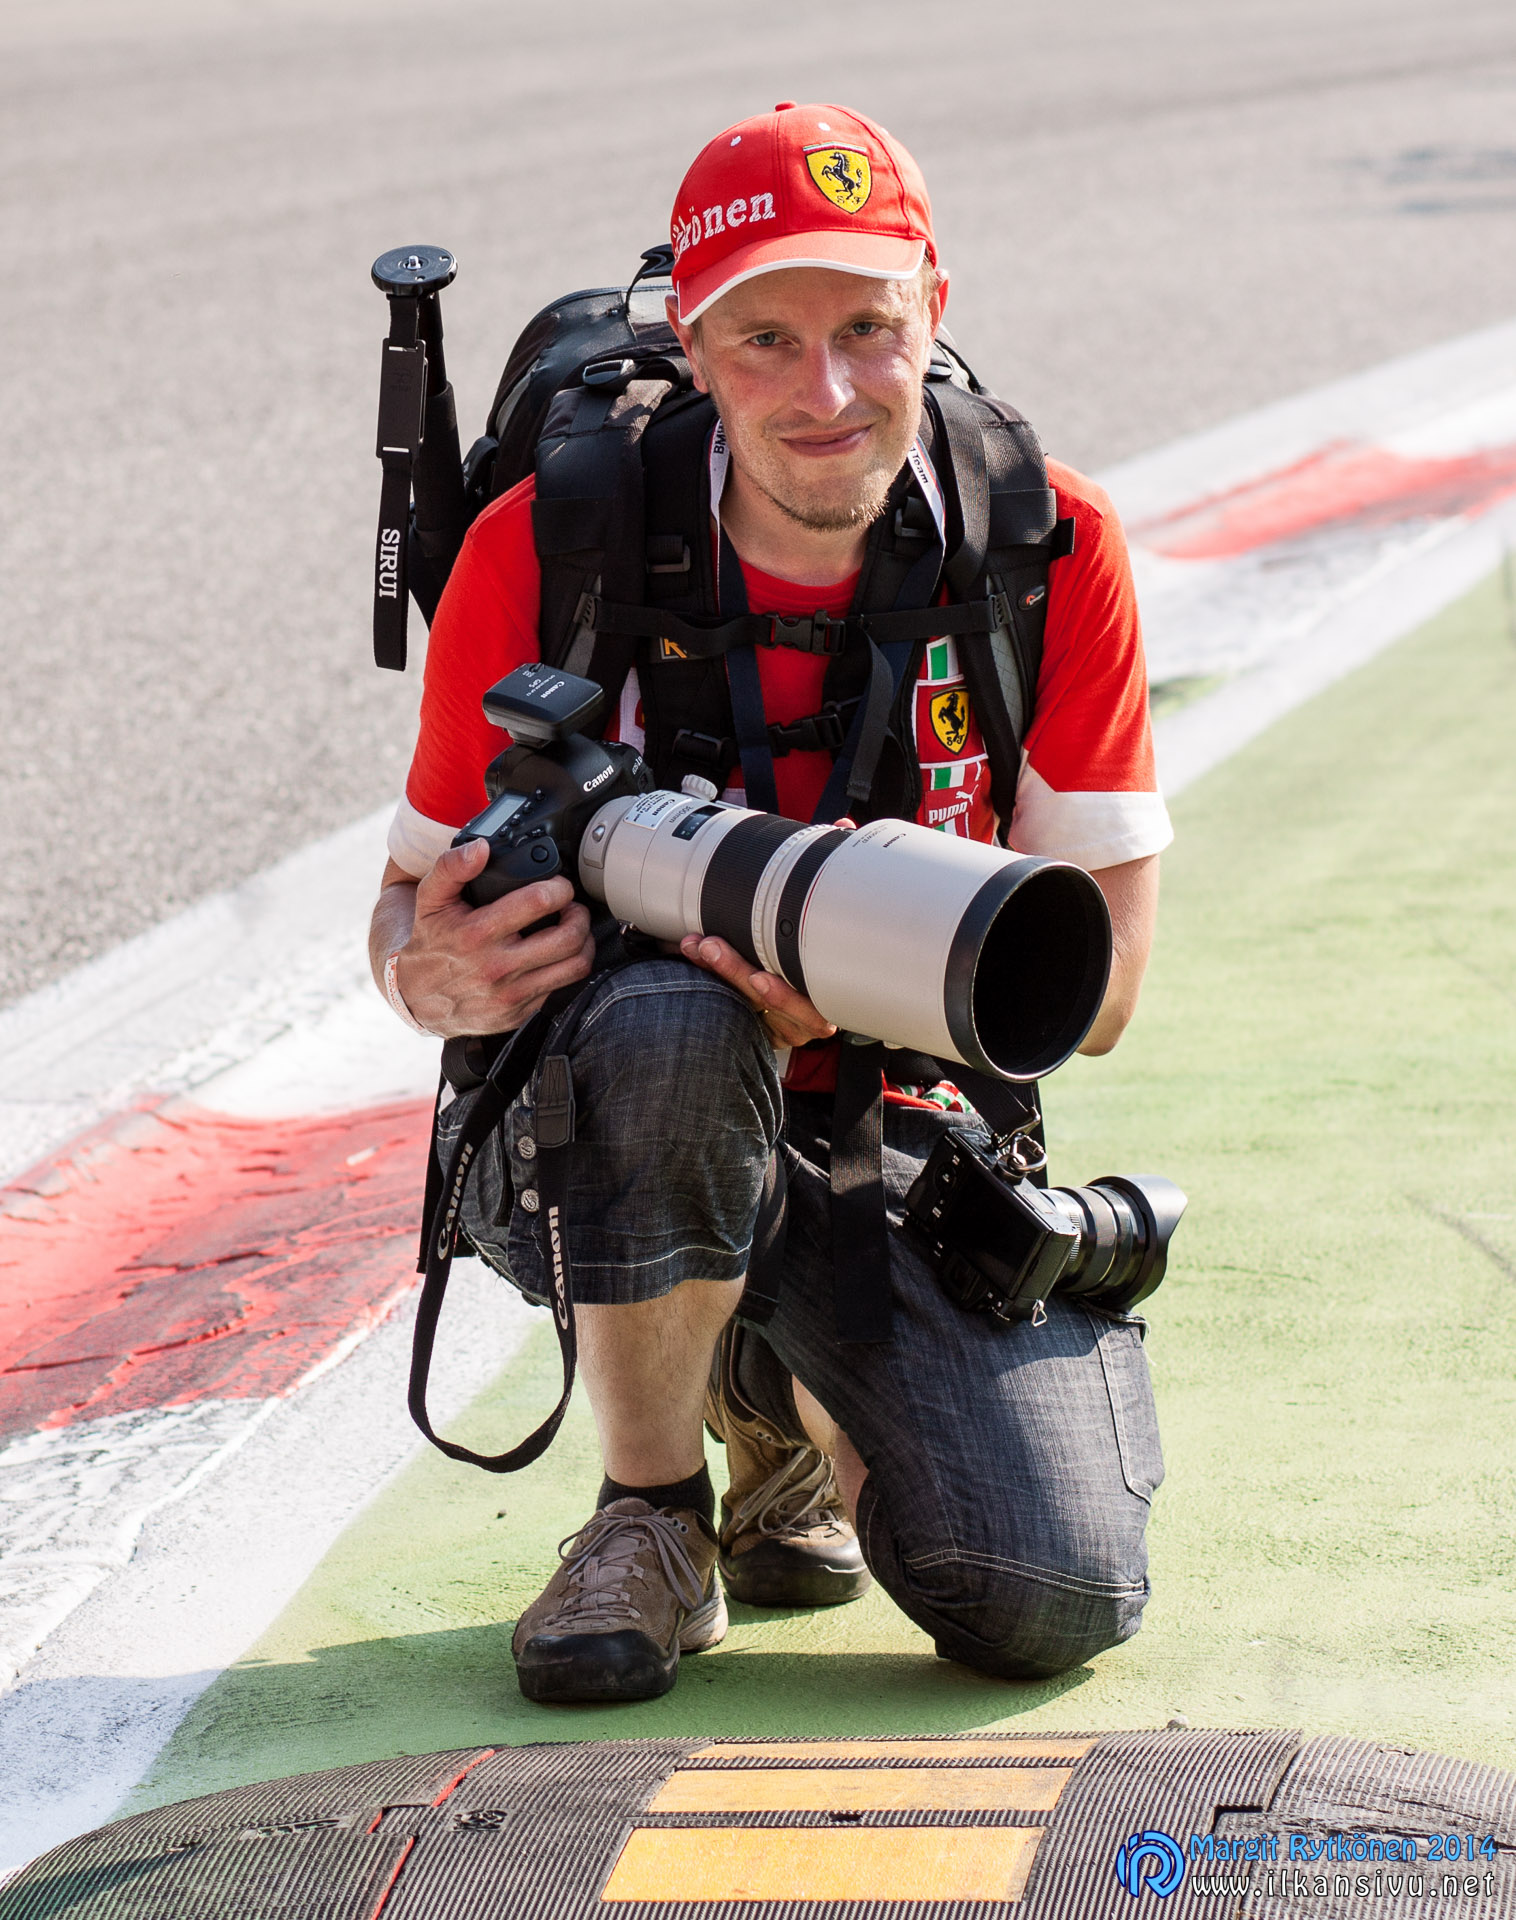 Photographer itself in Monza